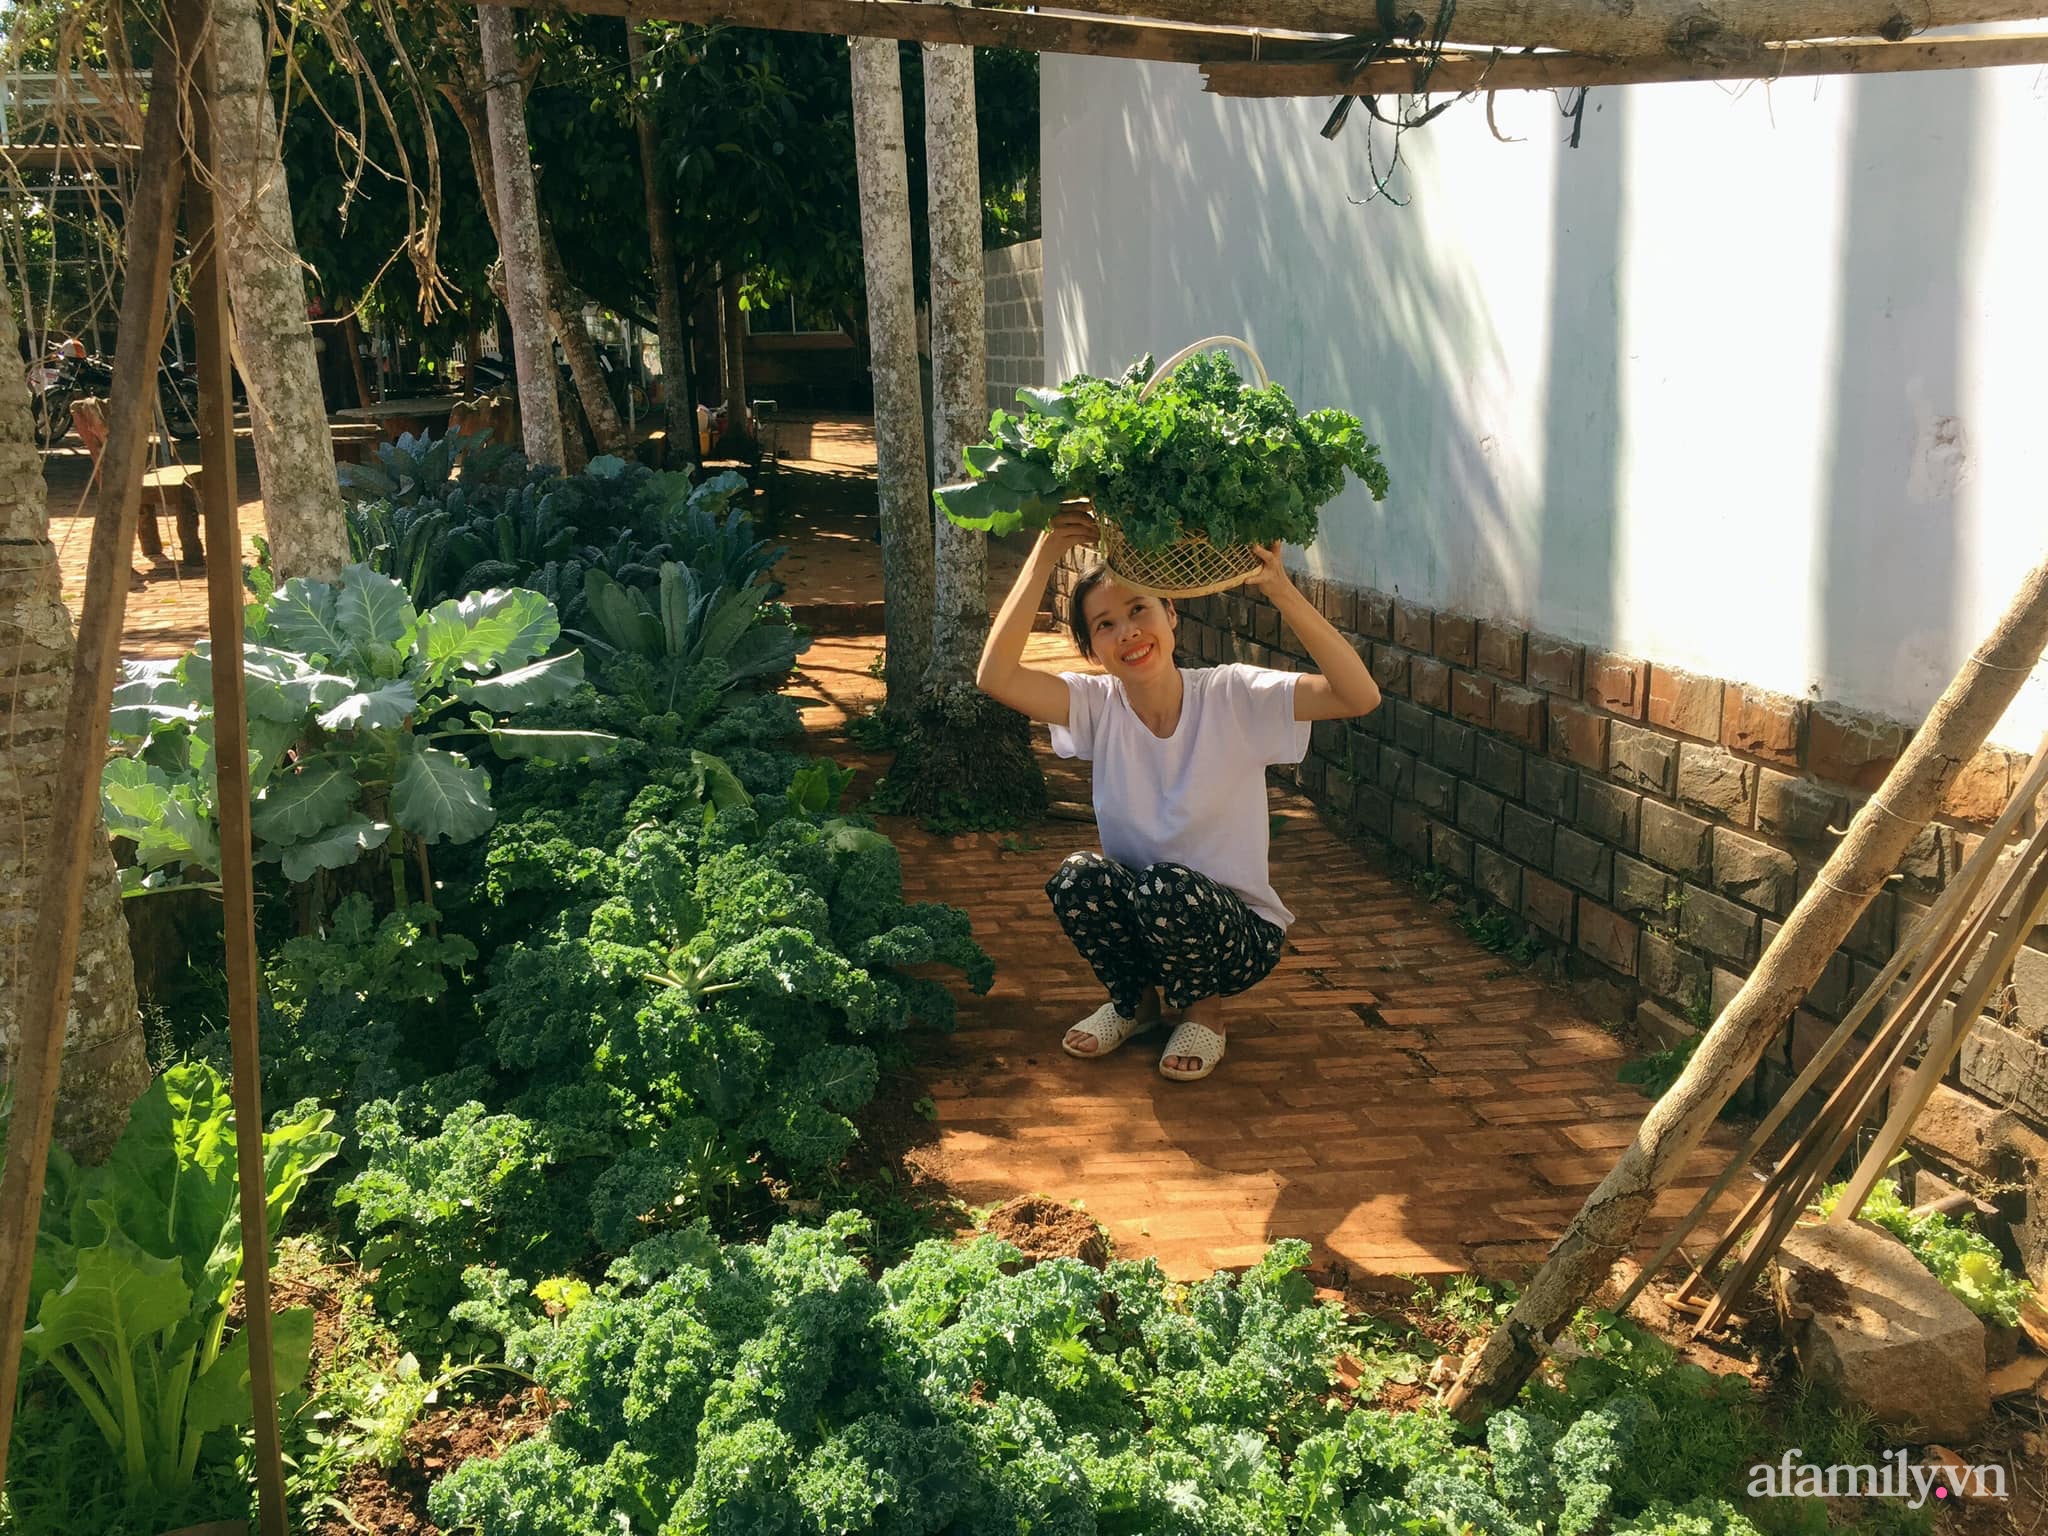 Khu vườn quanh năm tốt tươi rau quả sạch của mẹ mệnh Hỏa trồng cho con trai thưởng thức ở Đắk Lắk - Ảnh 2.